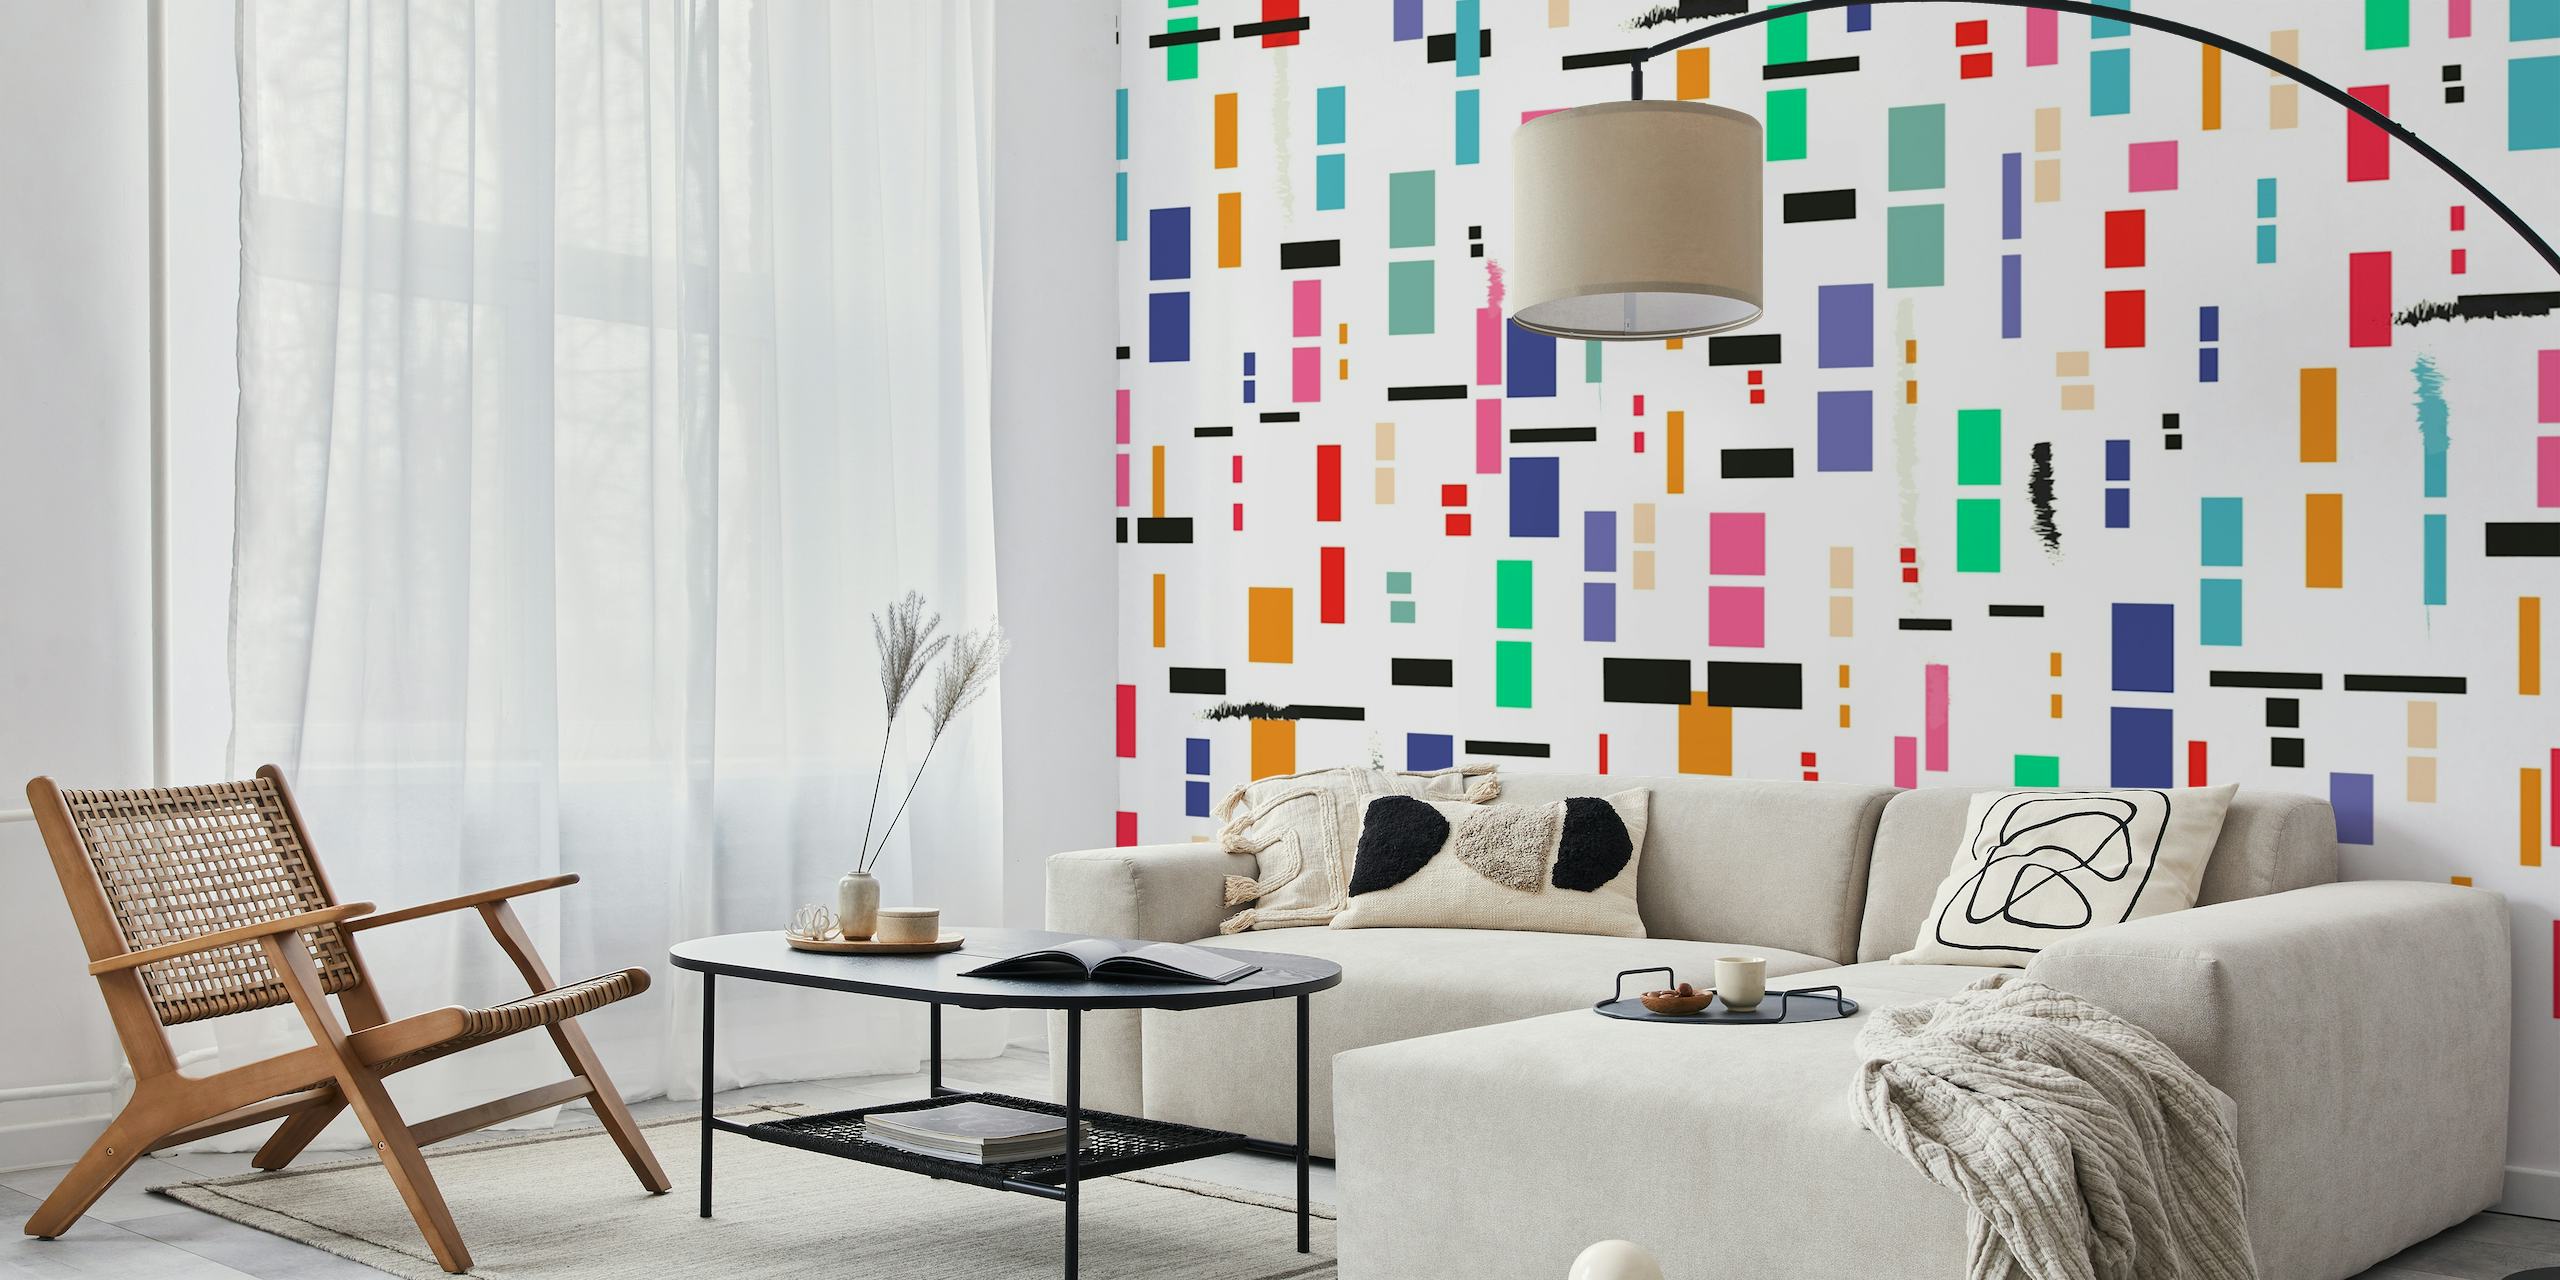 Mural de parede abstrato em bloco de cores com diversas formas retangulares em uma variedade de cores